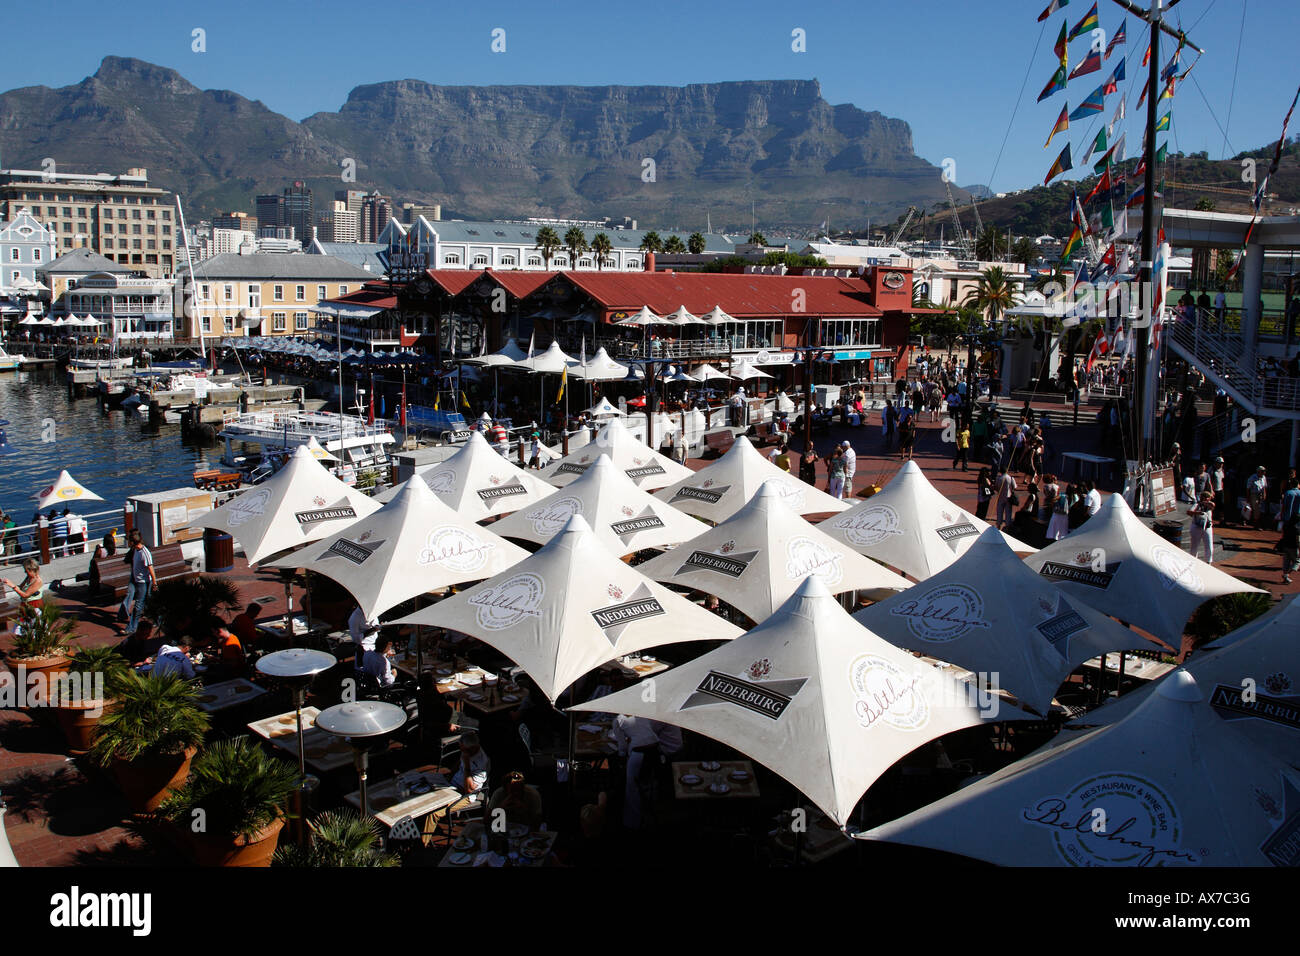 Donnant sur les cafés et restaurants de quay 5 v&A Waterfront Cape town western cape province afrique du sud Banque D'Images